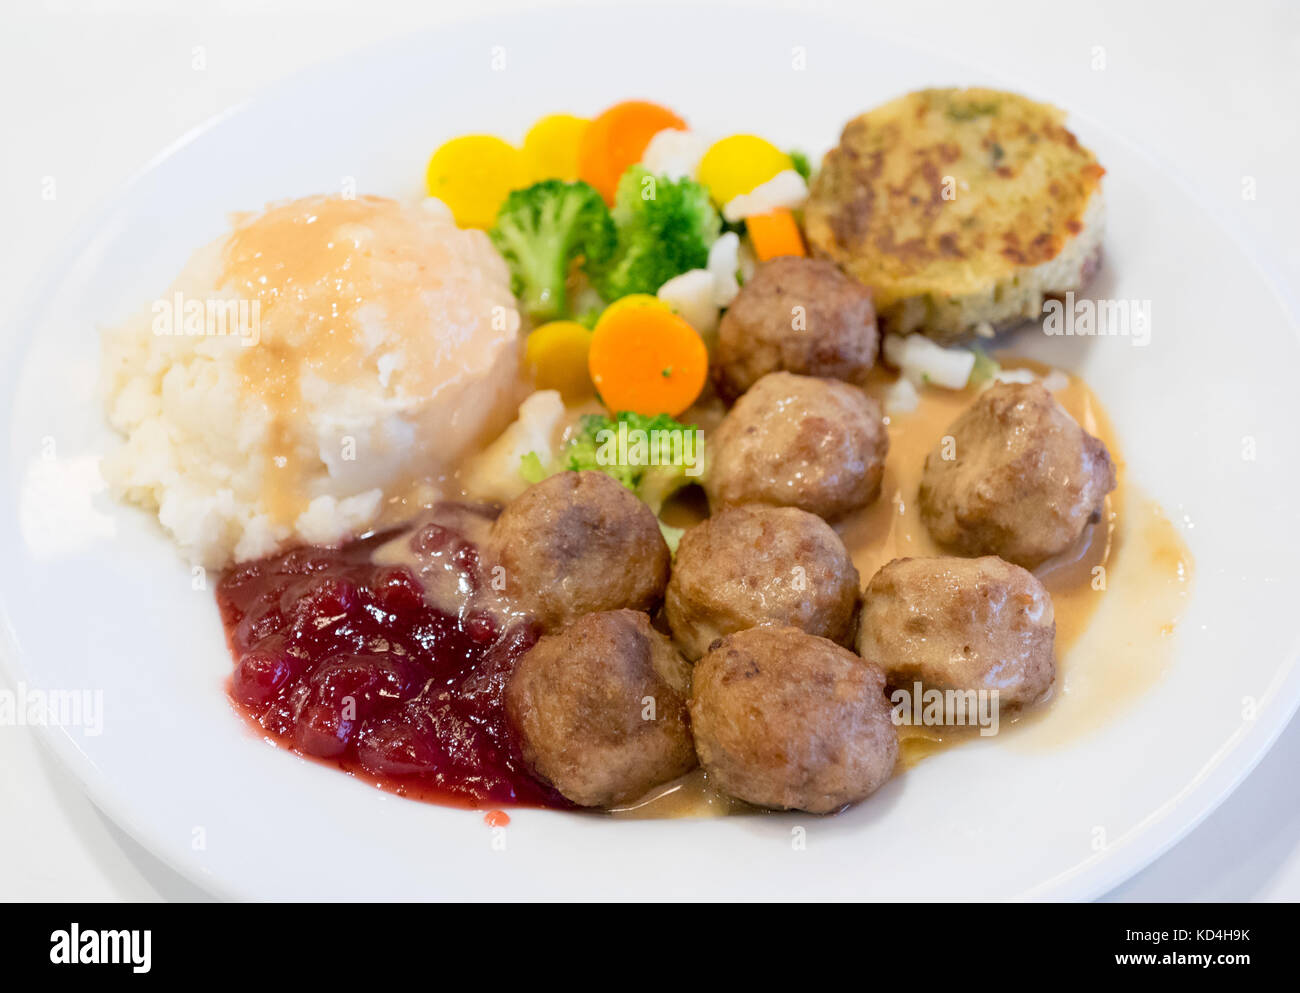 Ein Teller mit IKEA Fleischbällchen, Kartoffelpüree, Sahnesauce, Preiselbeersauce, gemischtem Gemüse und einem Kartoffel-Gemüse-Medaillon (grönsakskaka). Stockfoto